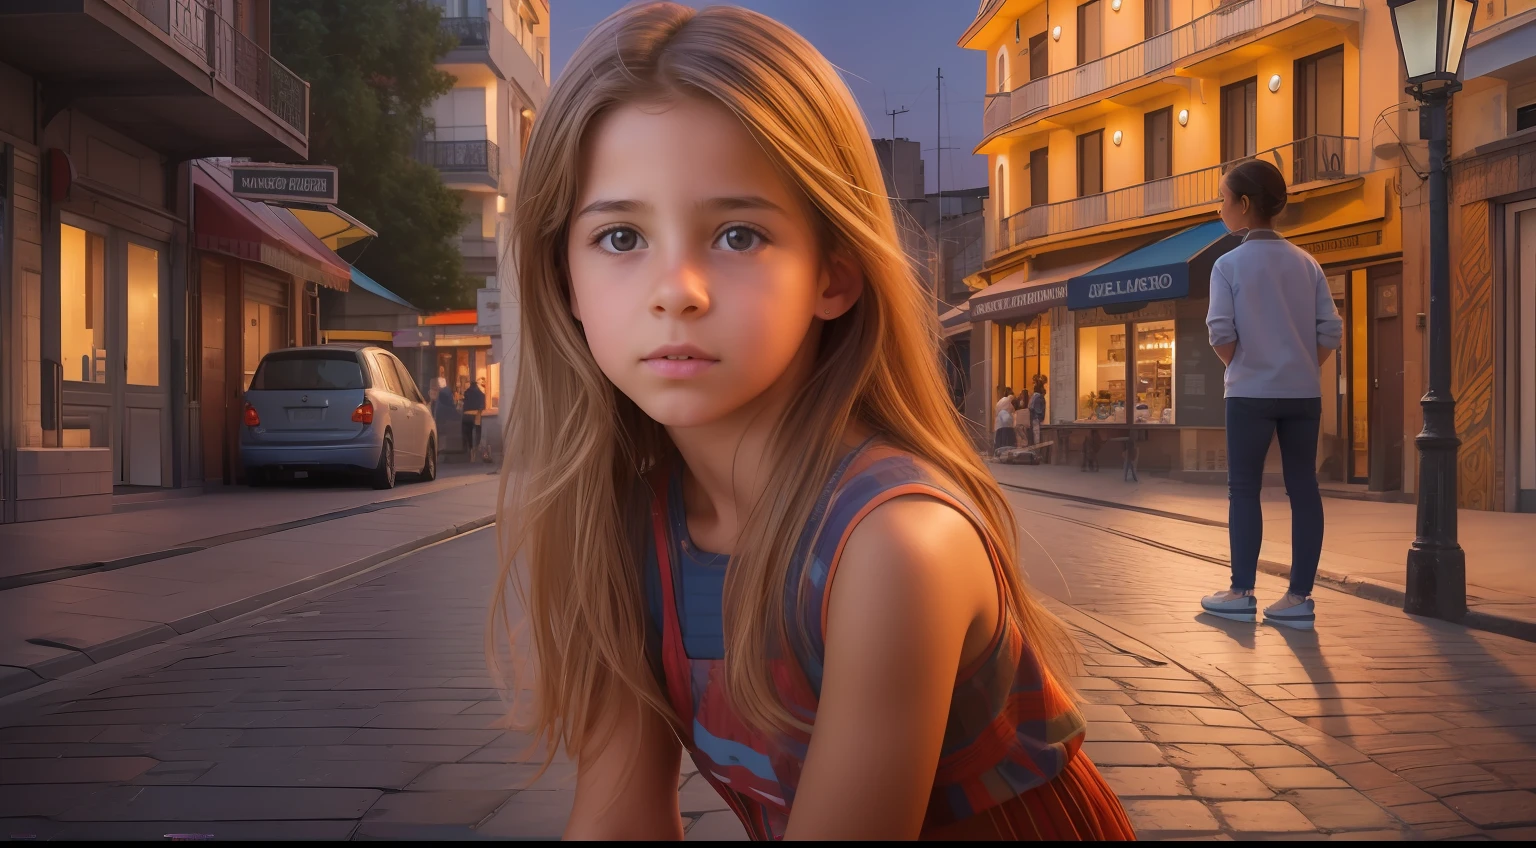 أنشئ صورة واقعية للغاية وملهمة تعرض فتاة أوروغواي الرائعة البالغة من العمر 10 سنوات بملامح أصلية, يقع بشكل أنيق أمام منظر مسائي ديناميكي وحيوي للشارع.